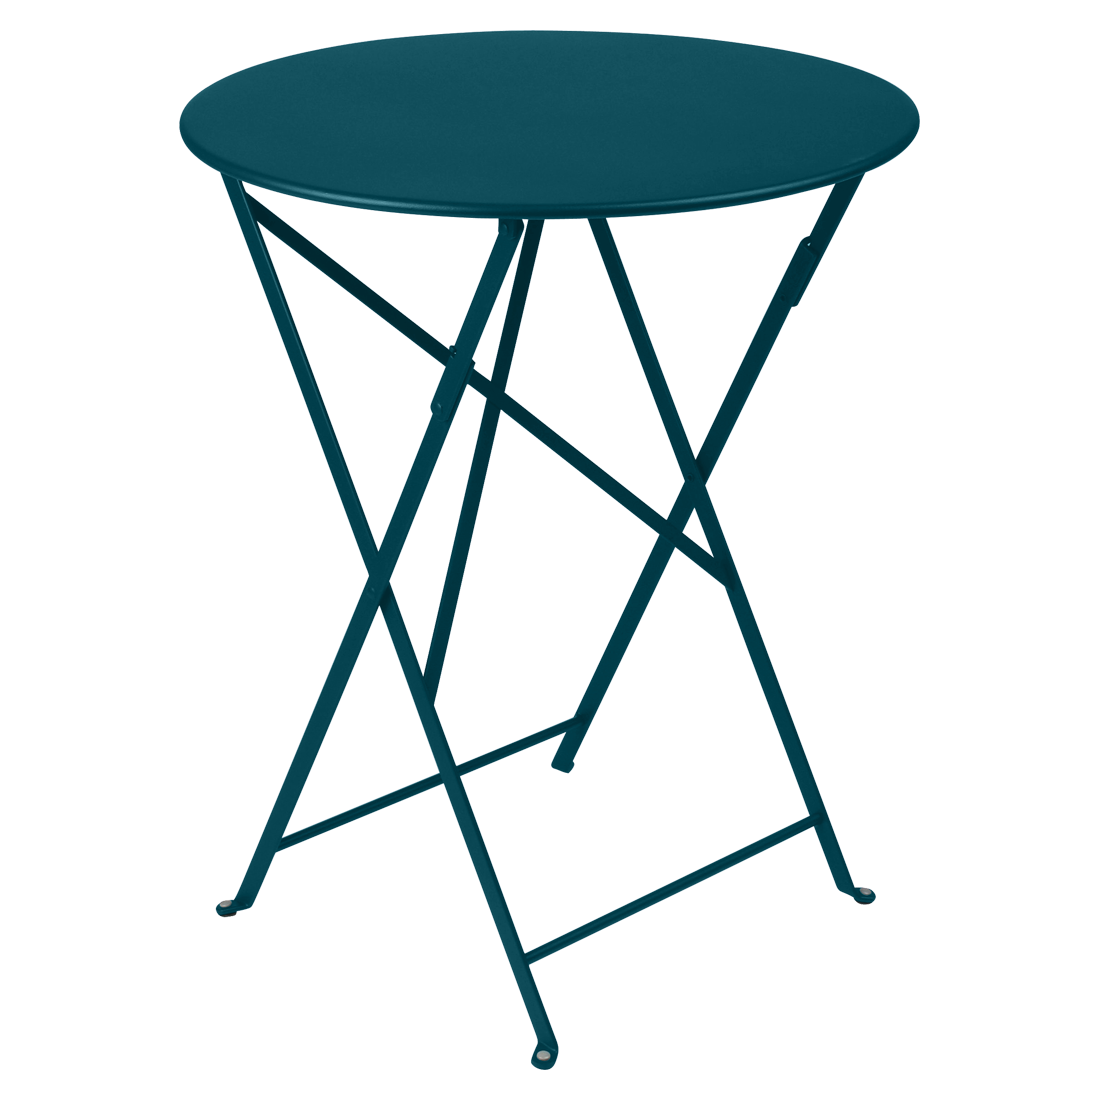 Modrý kovový skládací stůl Fermob Bistro+ Ø 60 cm